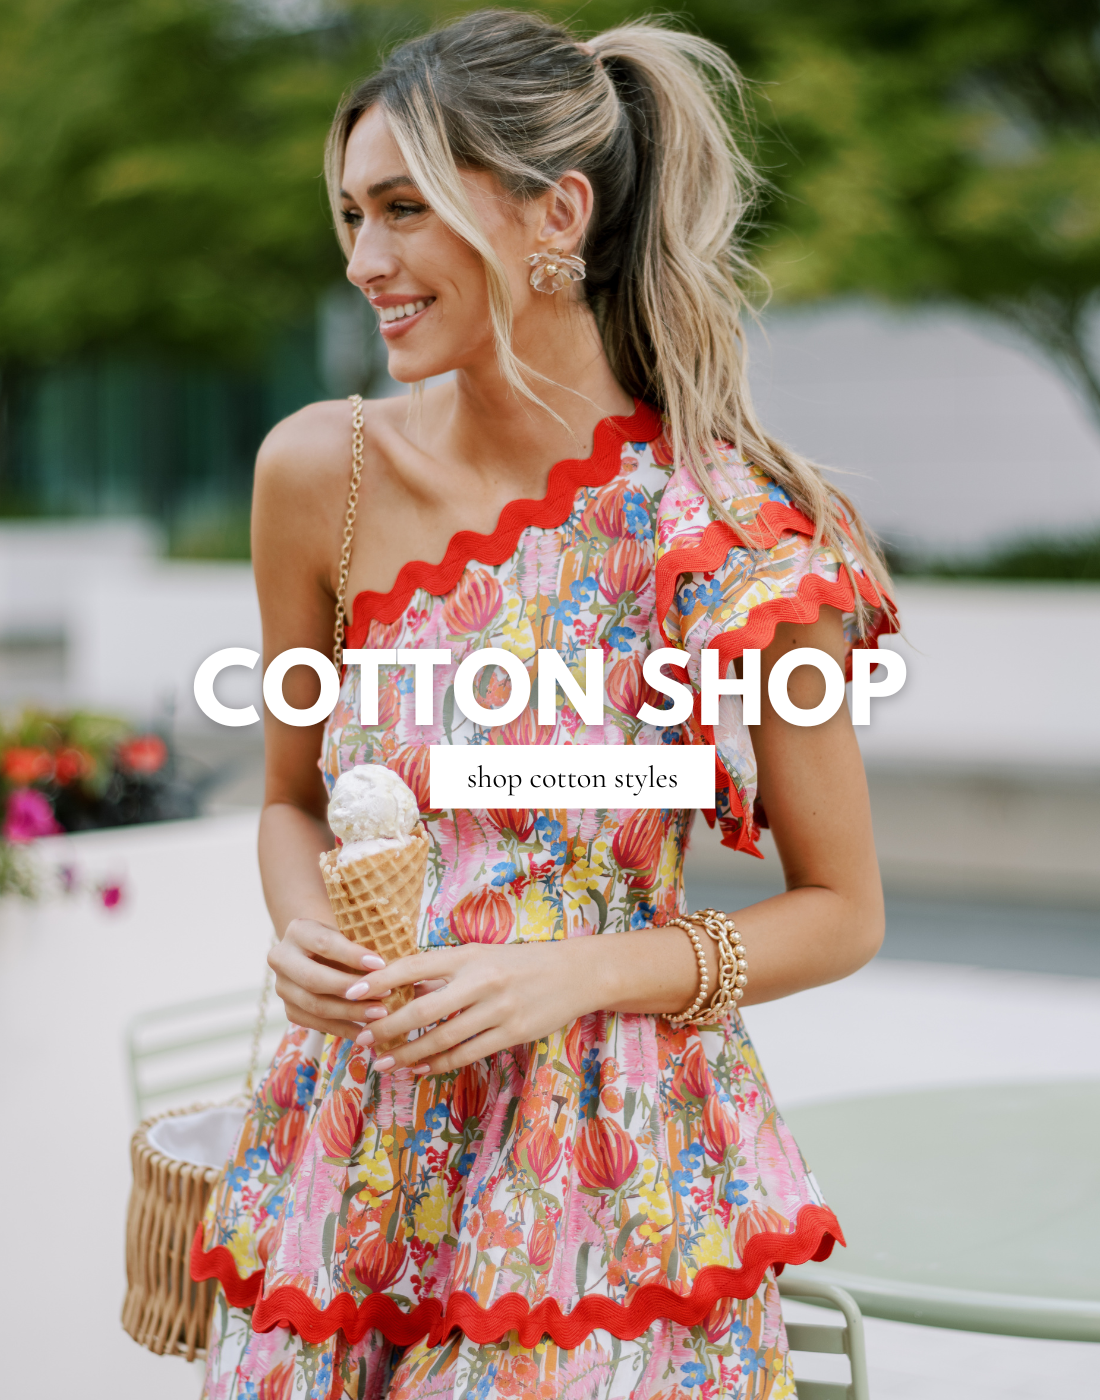 Cotton Shop banner image